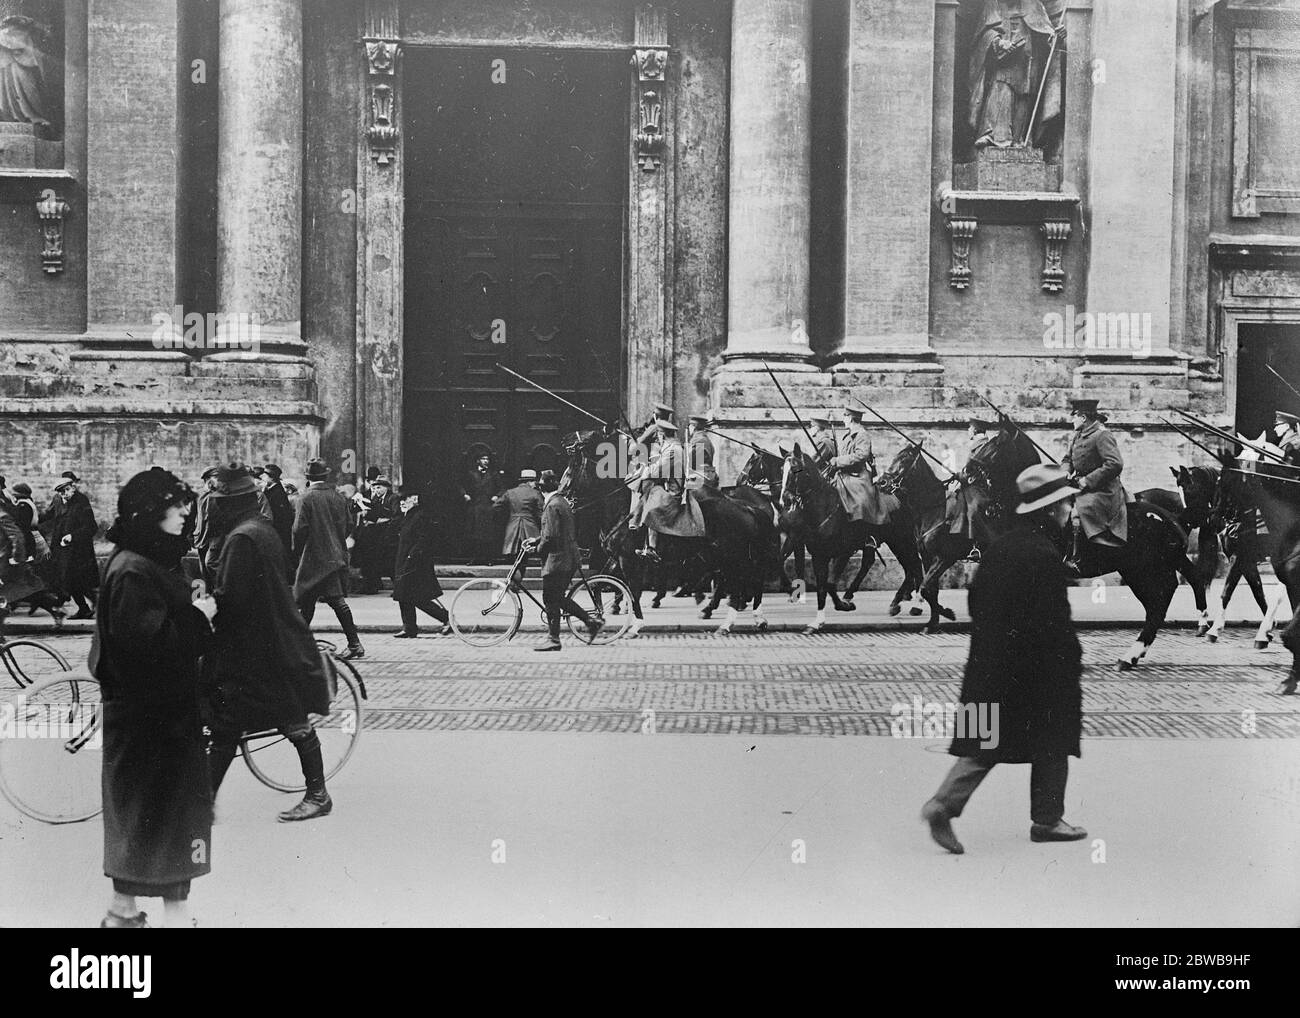 Garder l'ordre à Munich : foules dispersées par la cavalerie . La société allemande de défense impériale ( la Reichswehr ) maintient un ordre strict à Munich , où tous les rassemblements dans la rue sont dispersés par la cavalerie . Cavalerie défrichement des rues . 15 novembre 1923 Banque D'Images